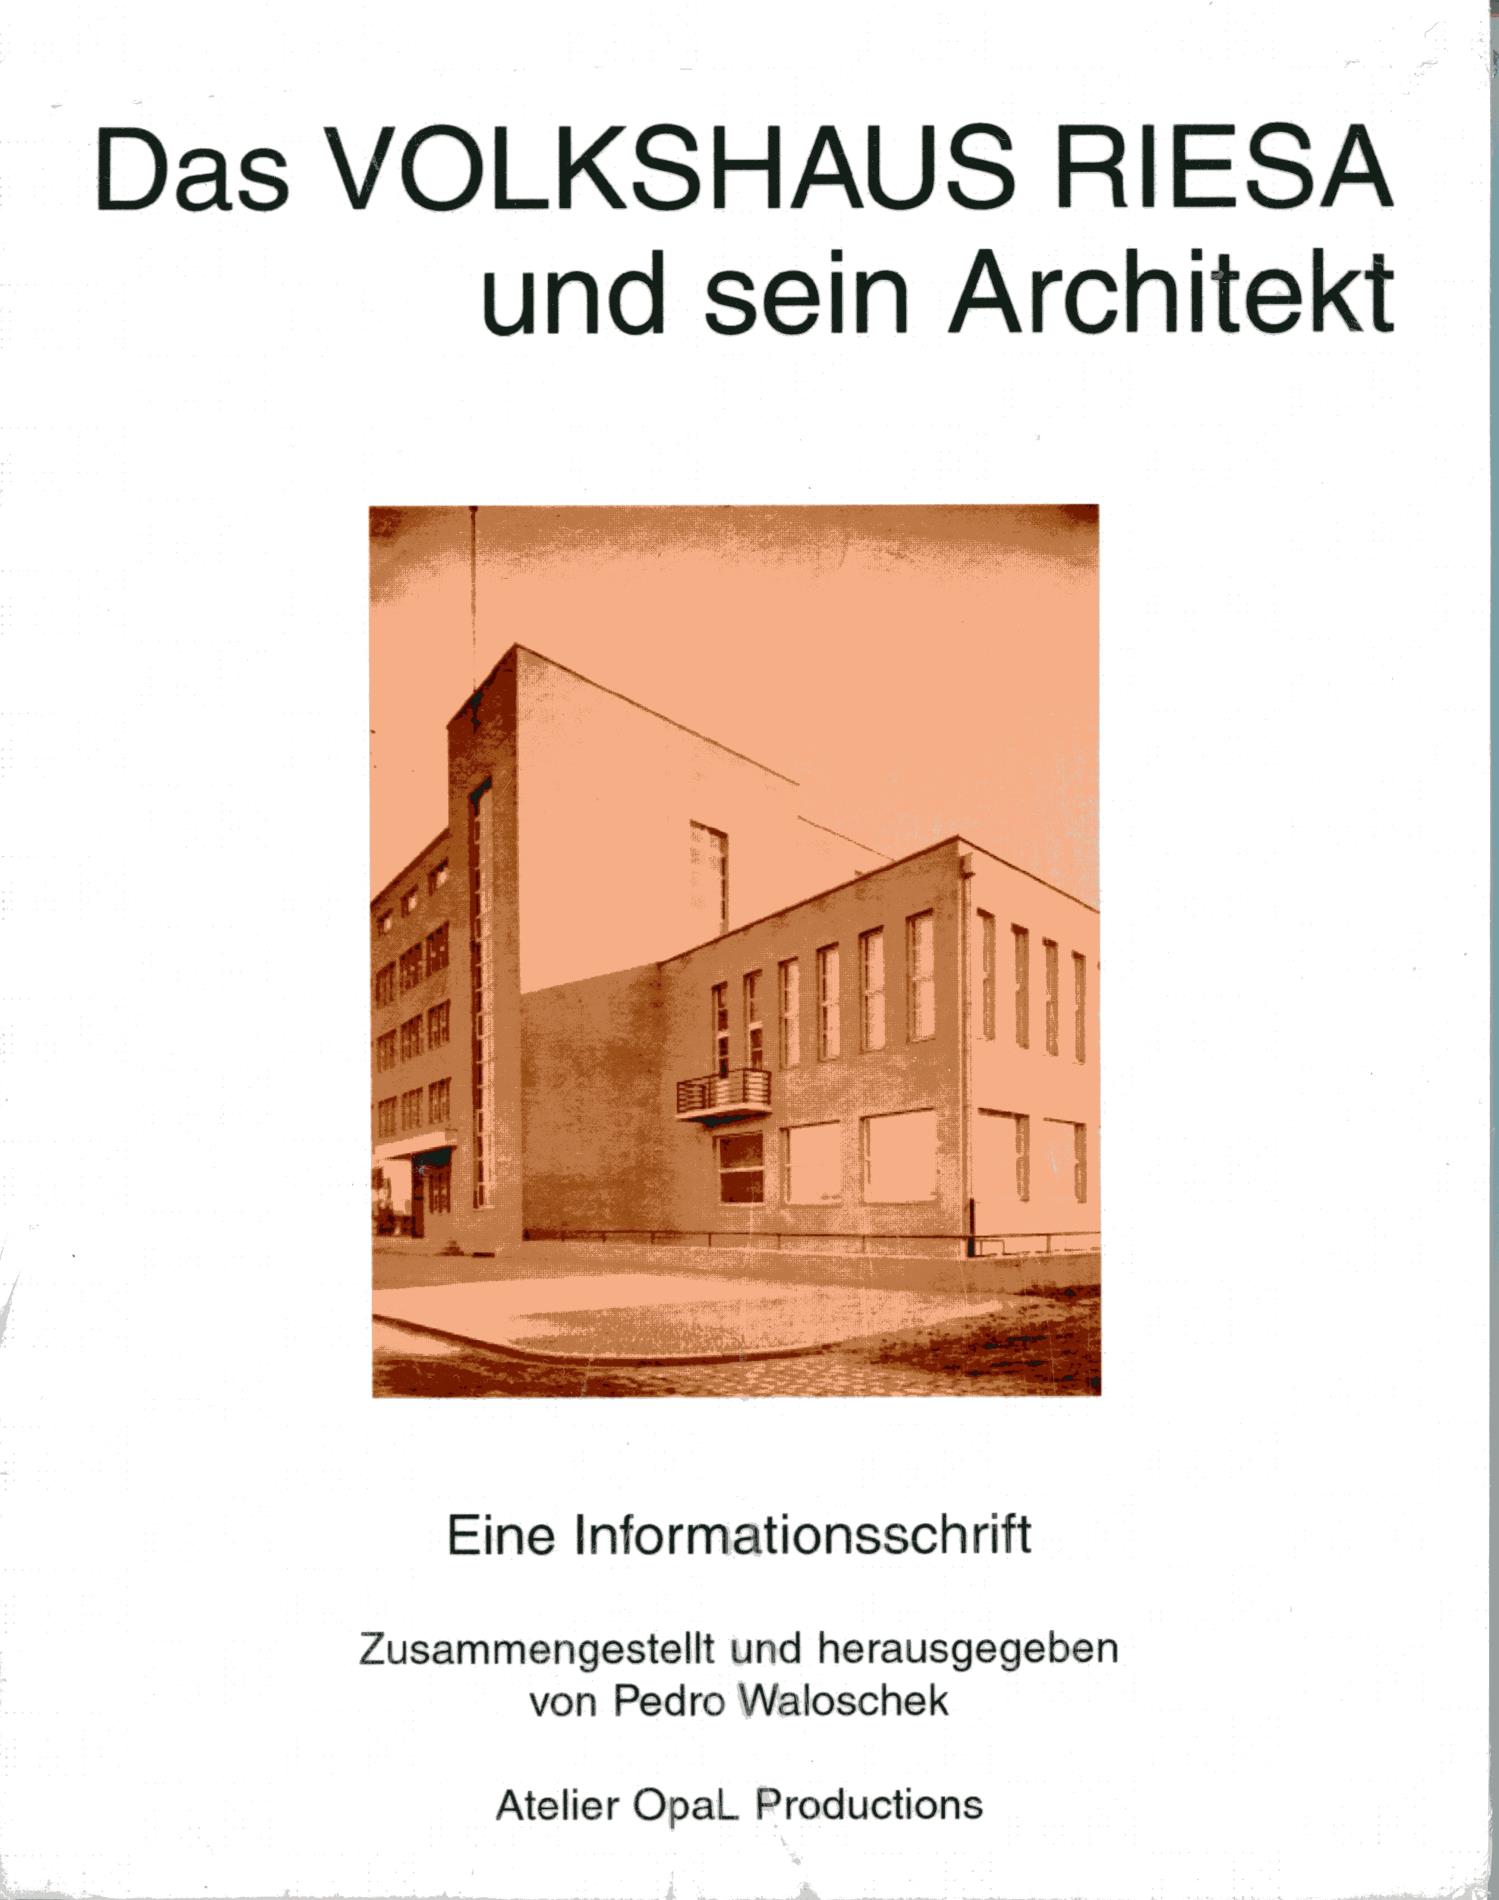 Das Volkshaus Riesa und sein Architekt. Eine Informationsschrift - Waloschek, Pedro (Zusammengestellt und herausgegeben)